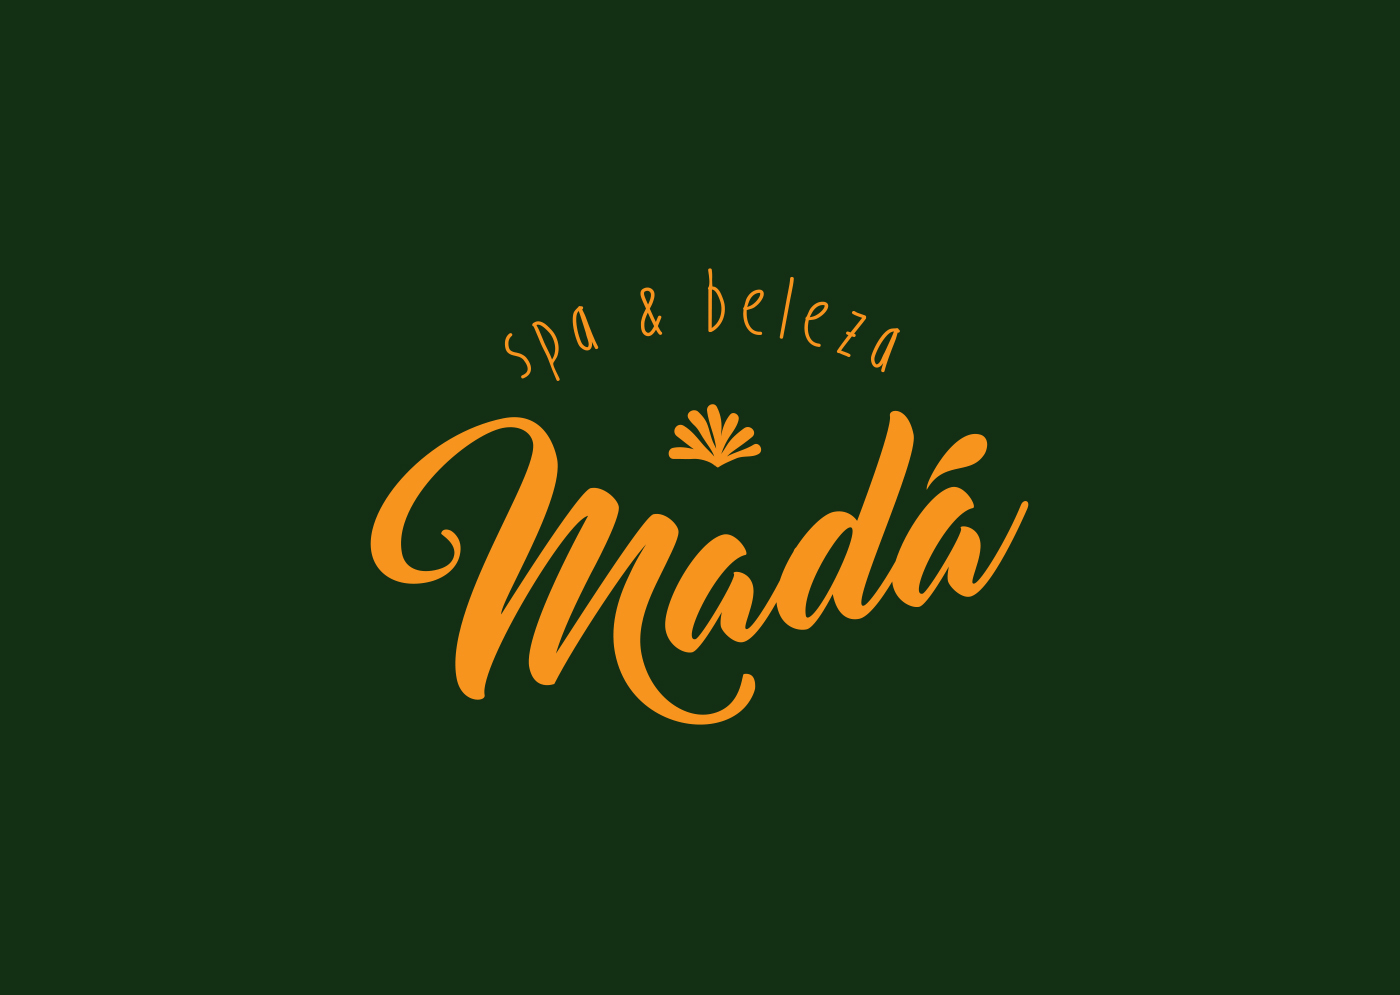 brand logo identidade marca madalena vila madalena mada bar e beleza beauty bar nail bar beauty saloon